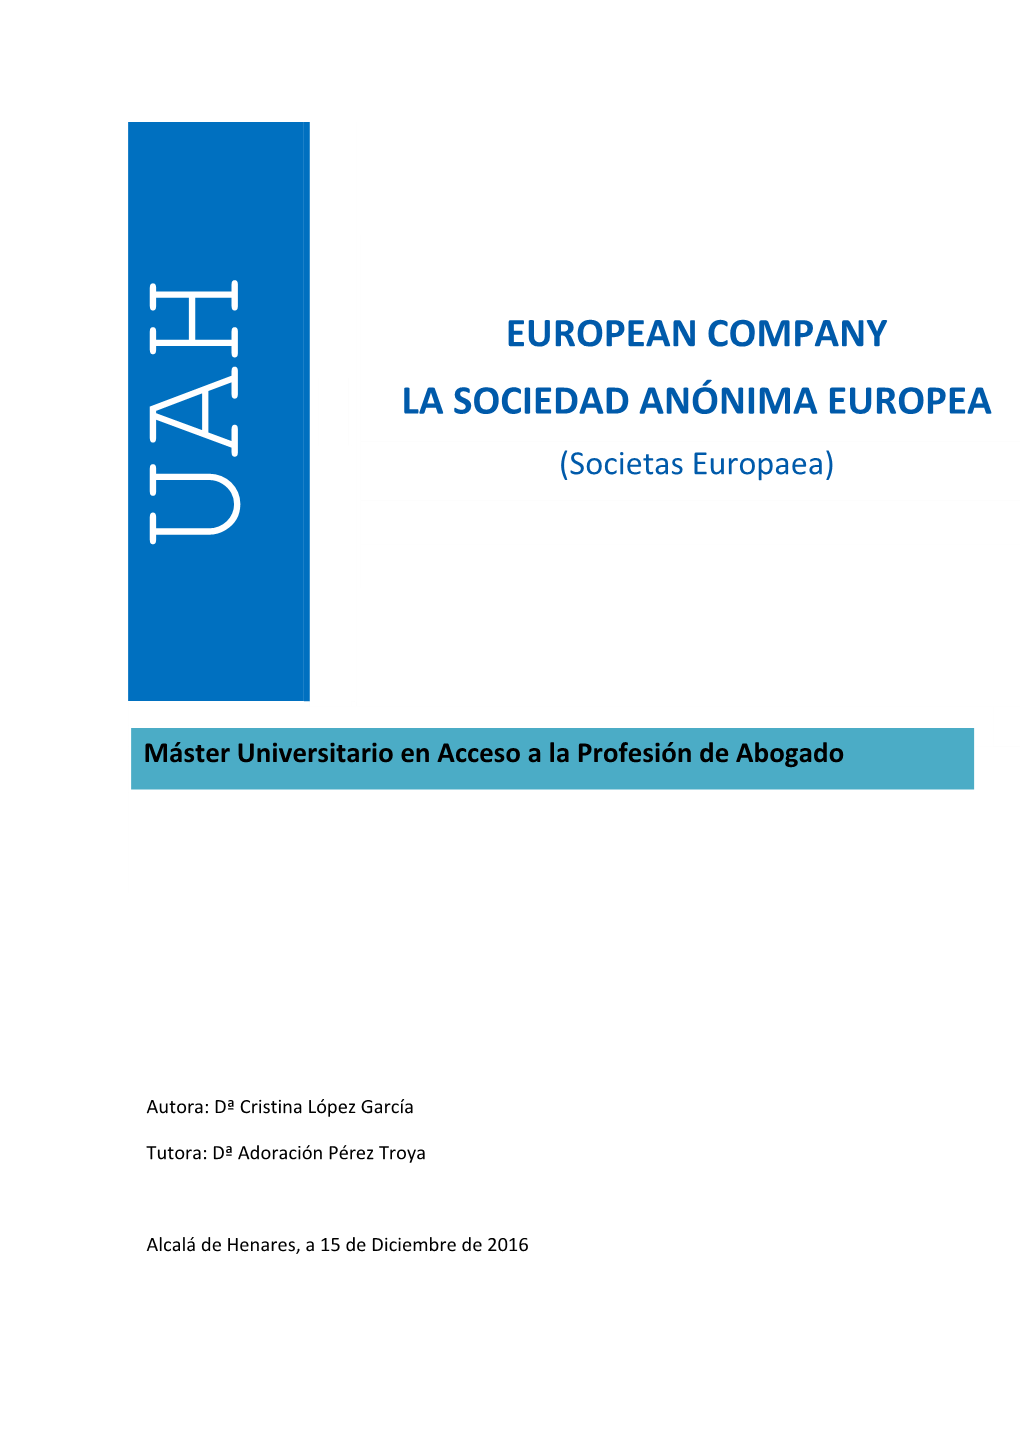 European Company La Sociedad Anónima Europea